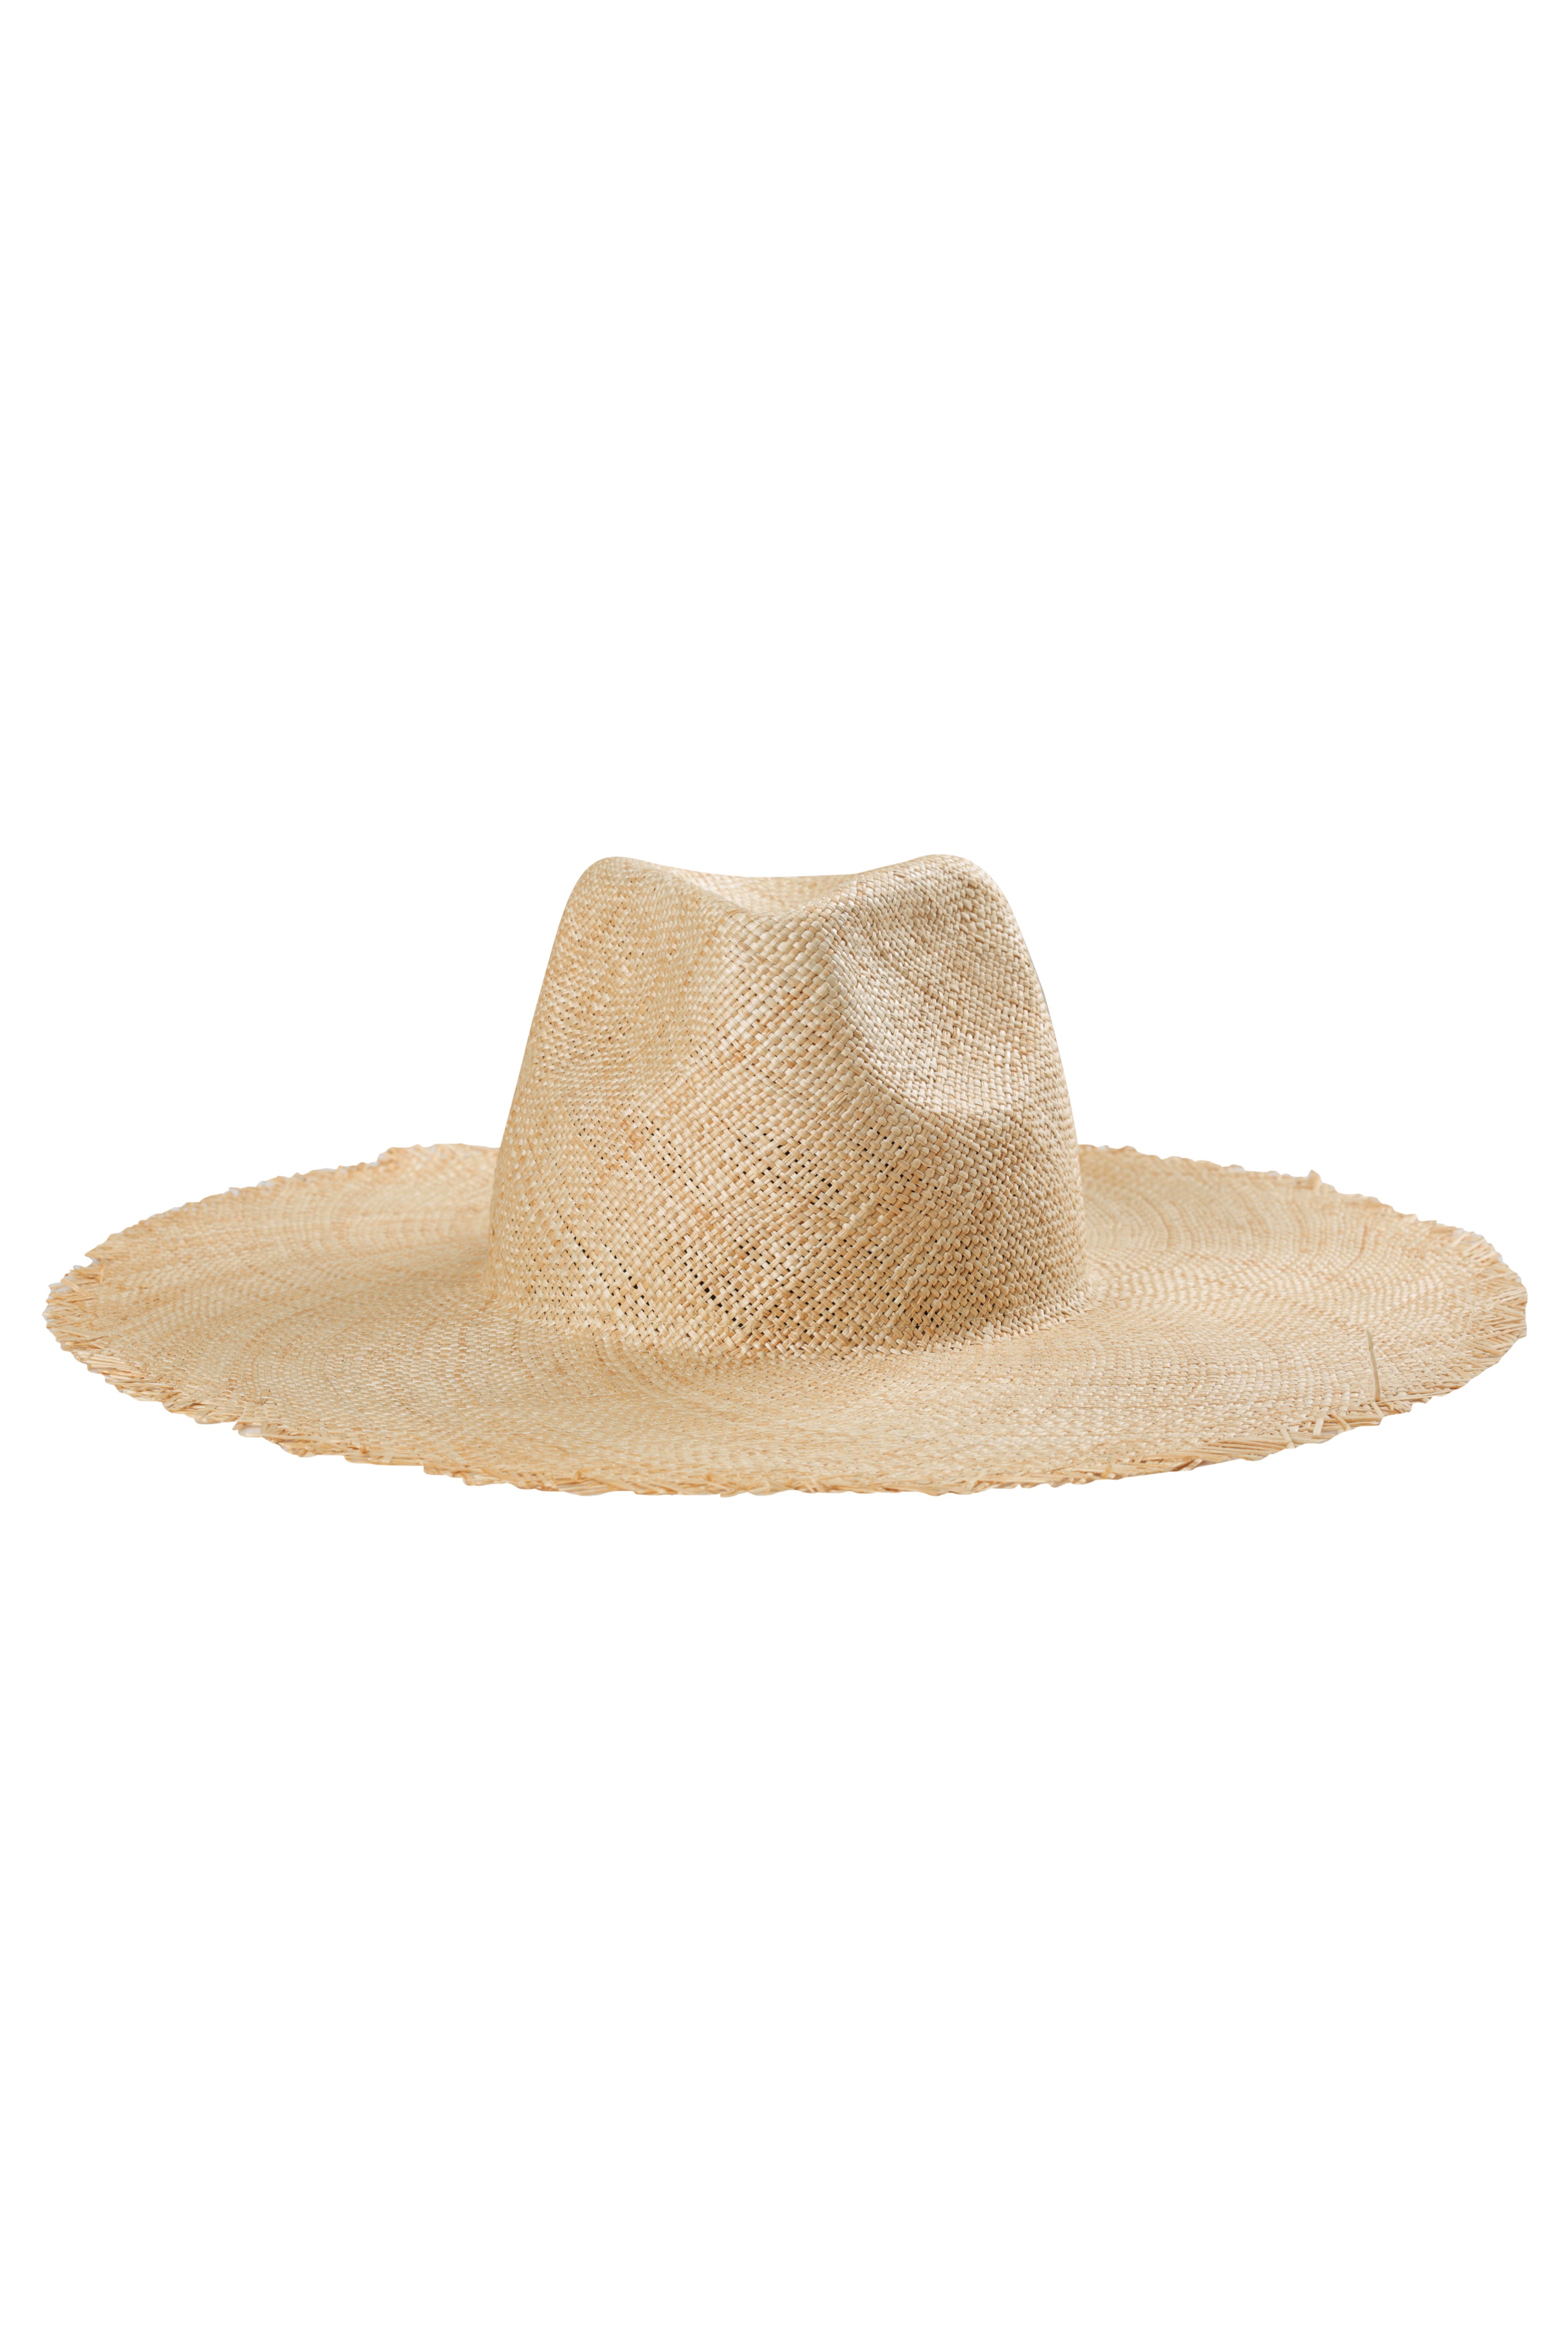 Moloka'i Panama Hat